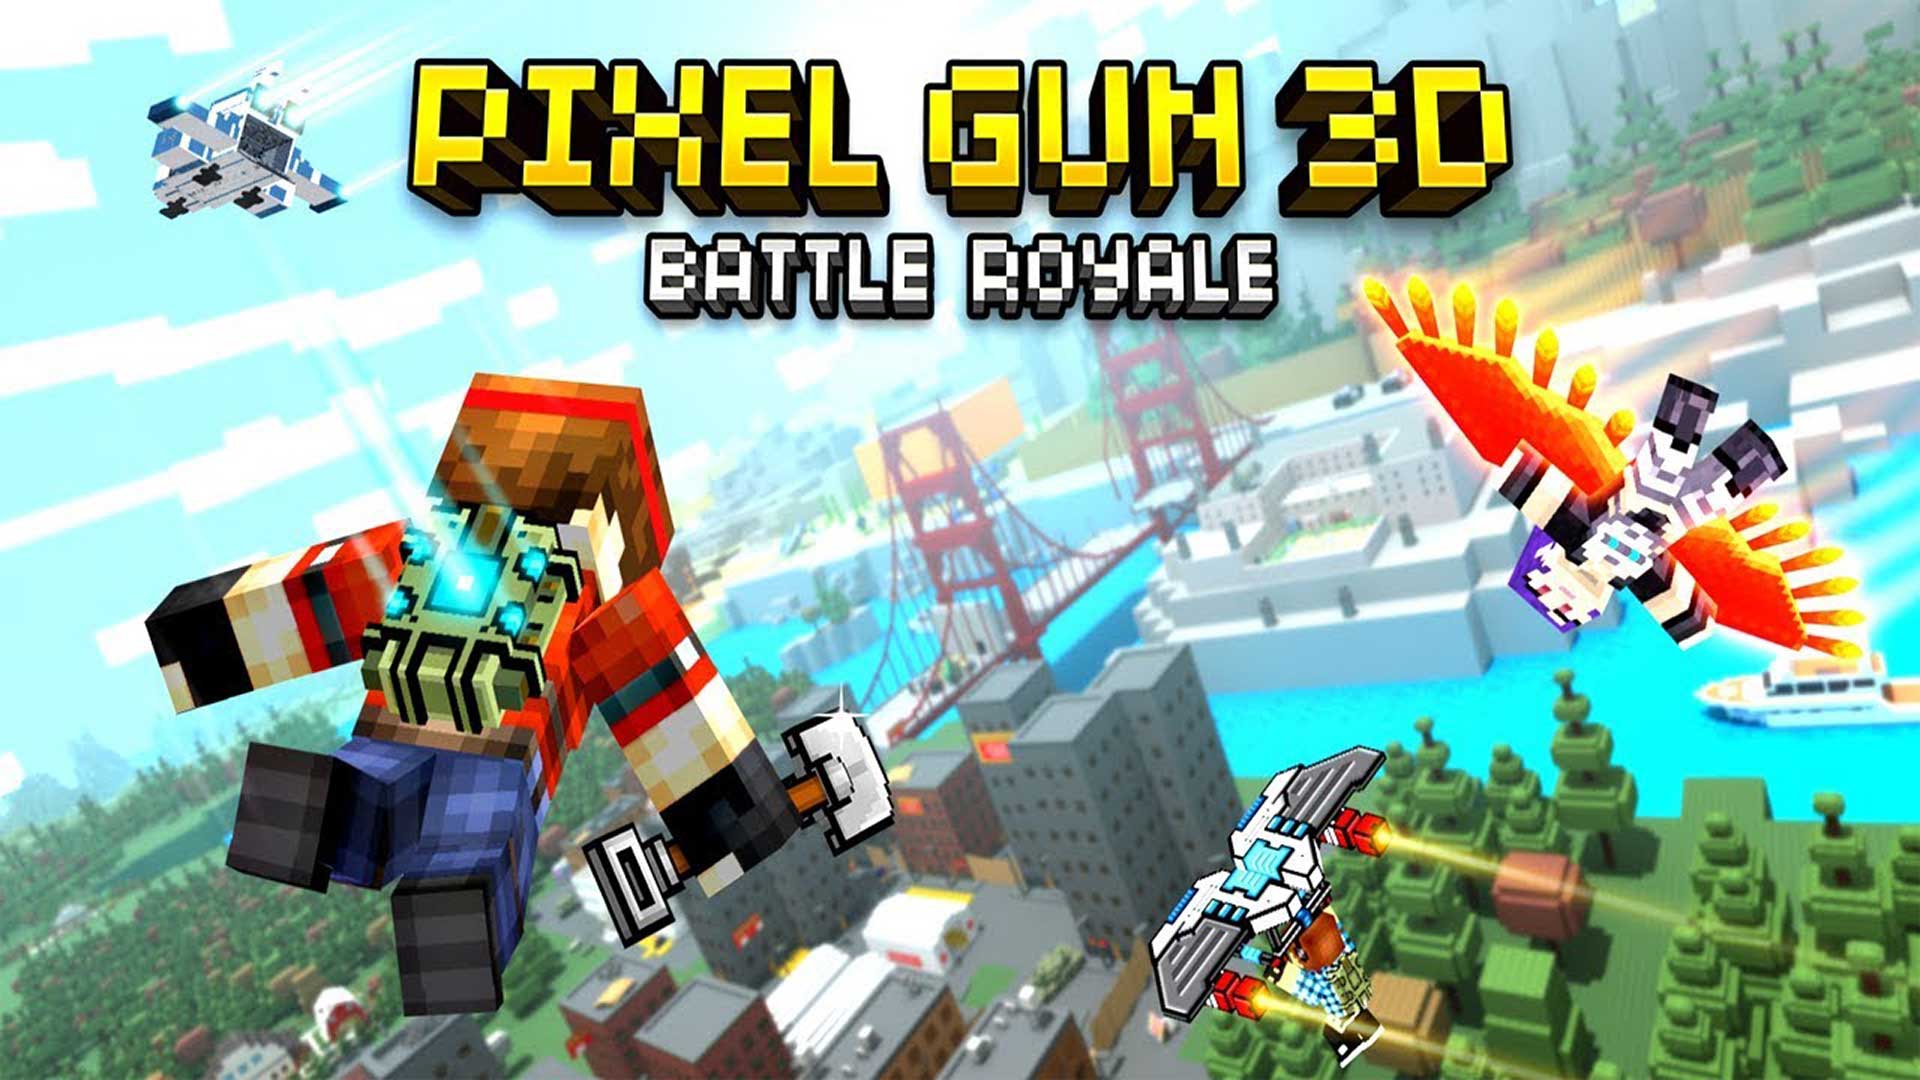 بازی Pixel Gun 3D